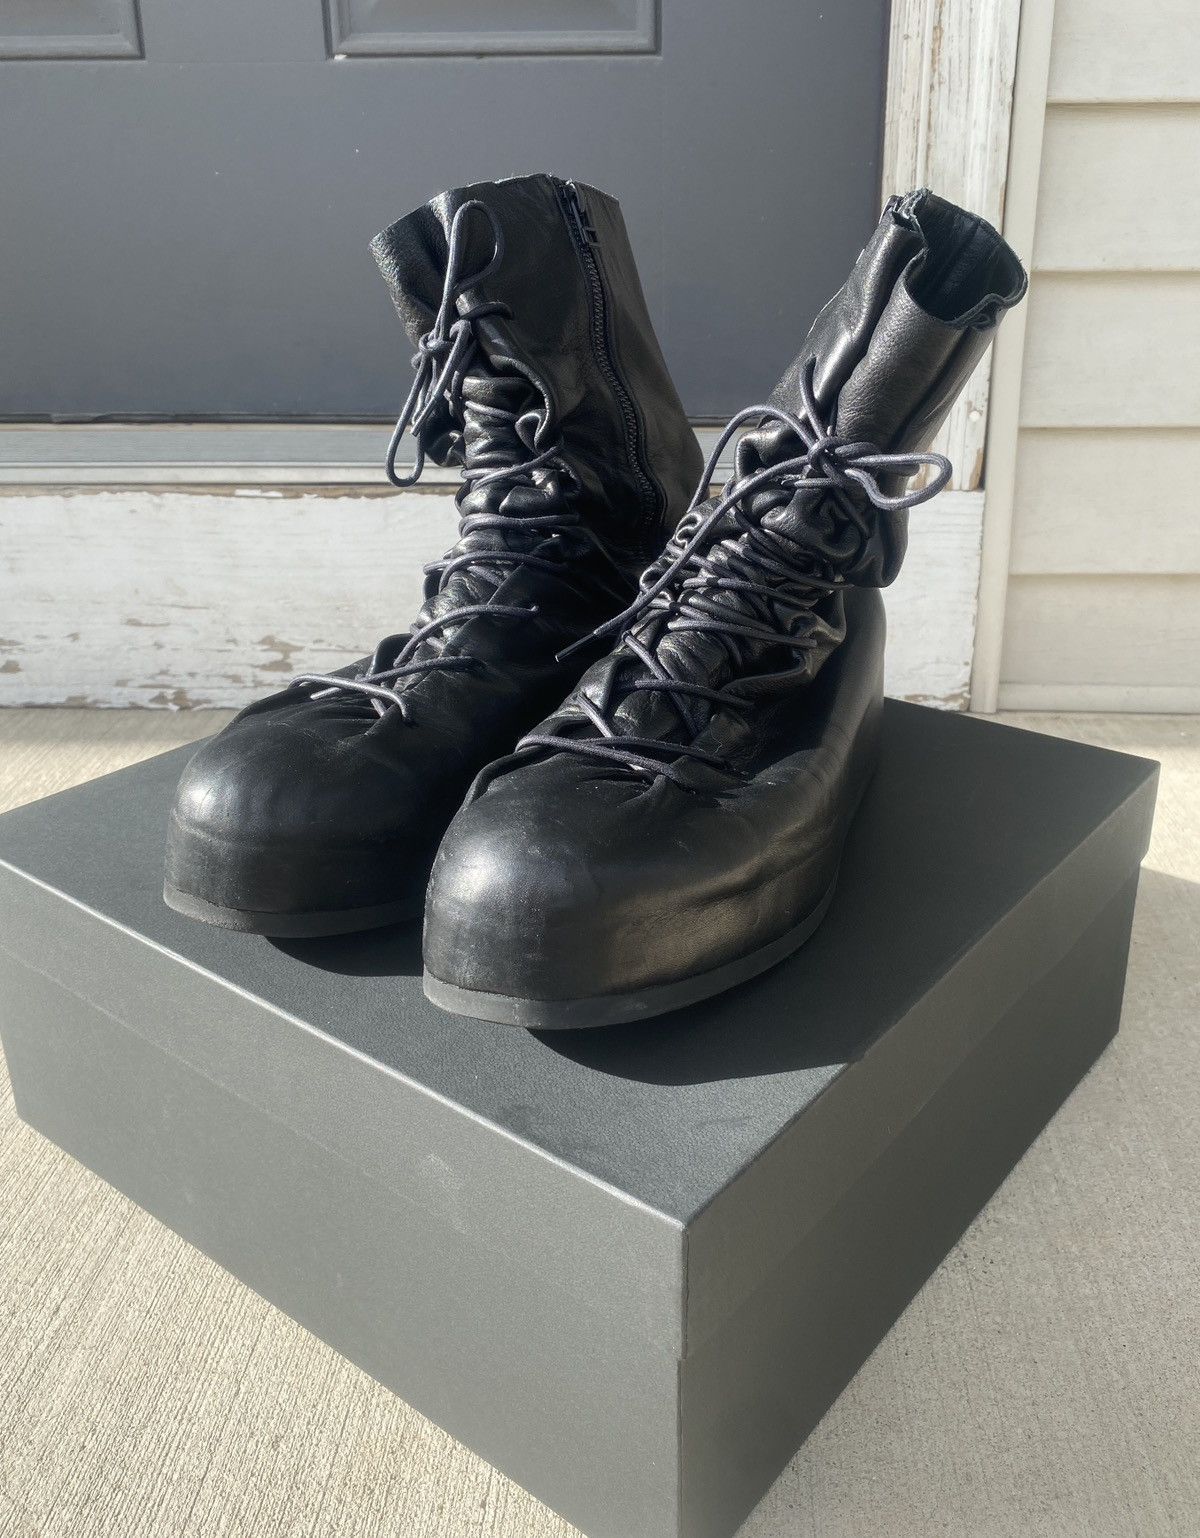 Yohji Yamamoto lace-up leather ankle boots - Black